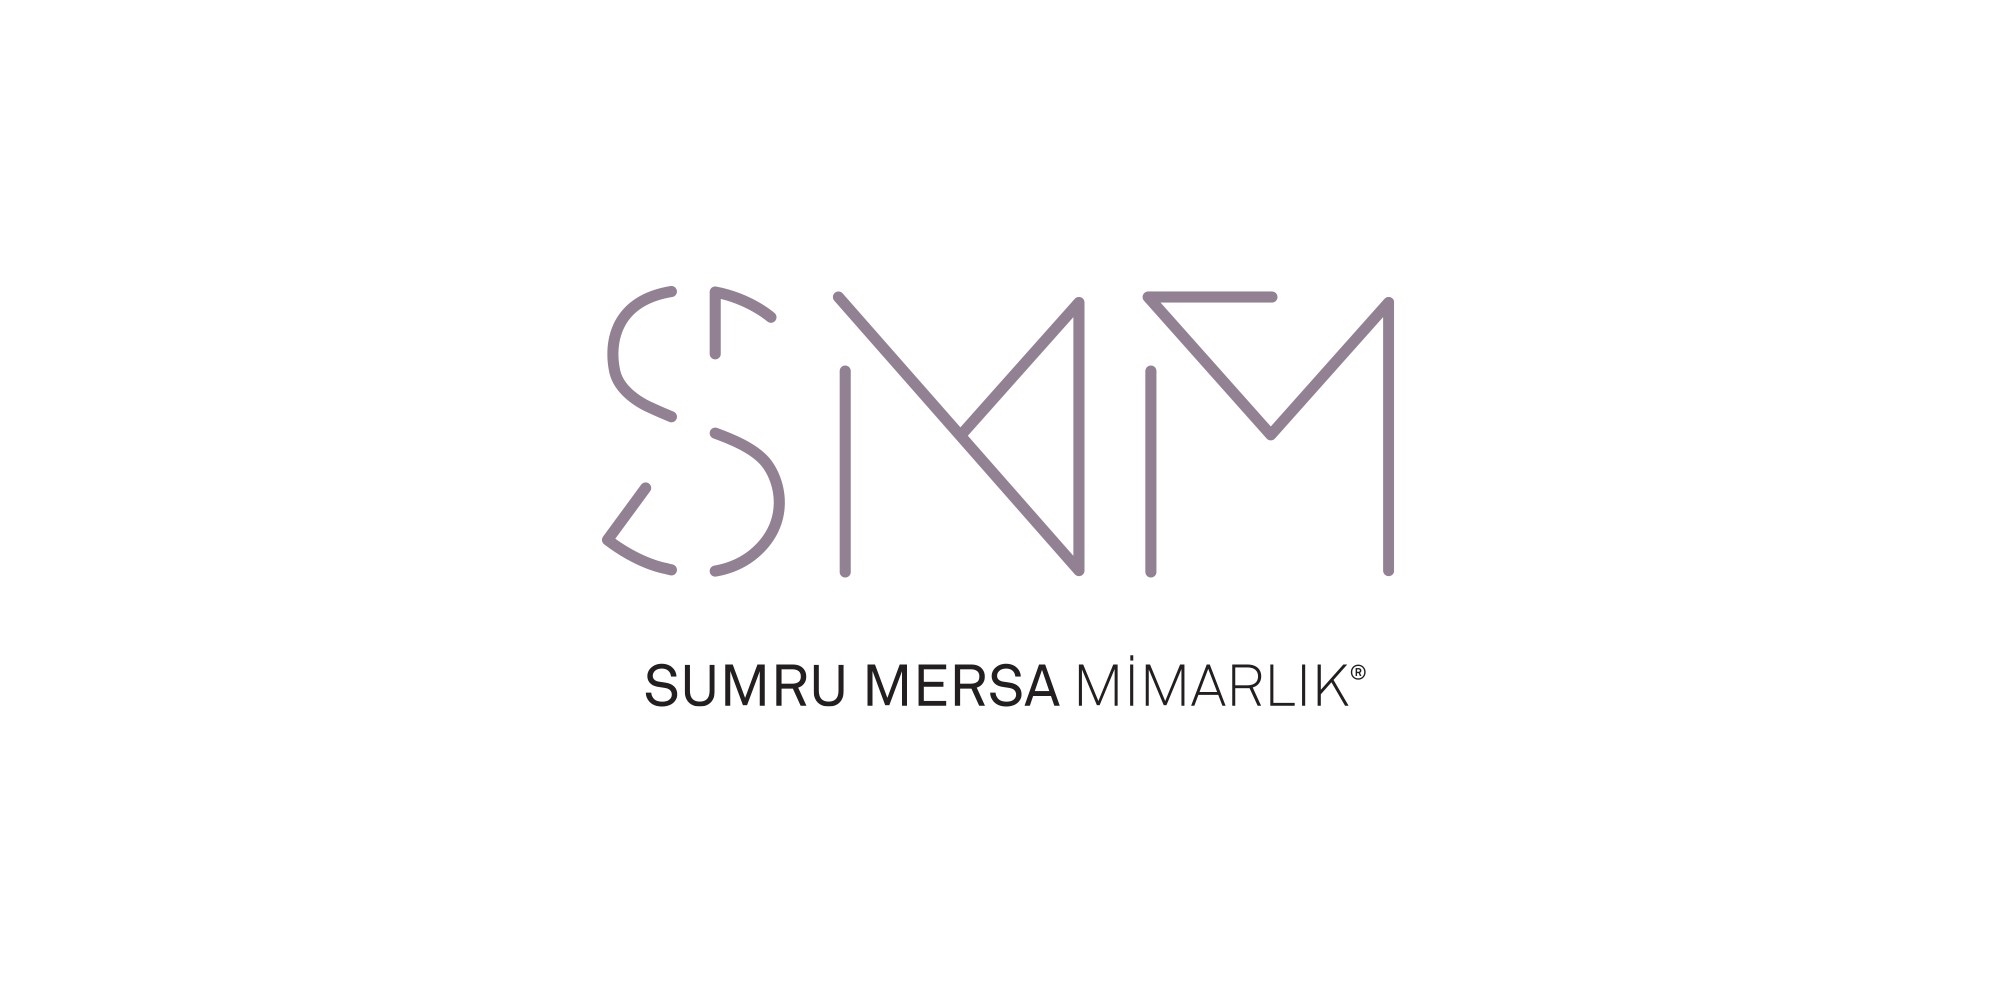 SMM Visual Identity